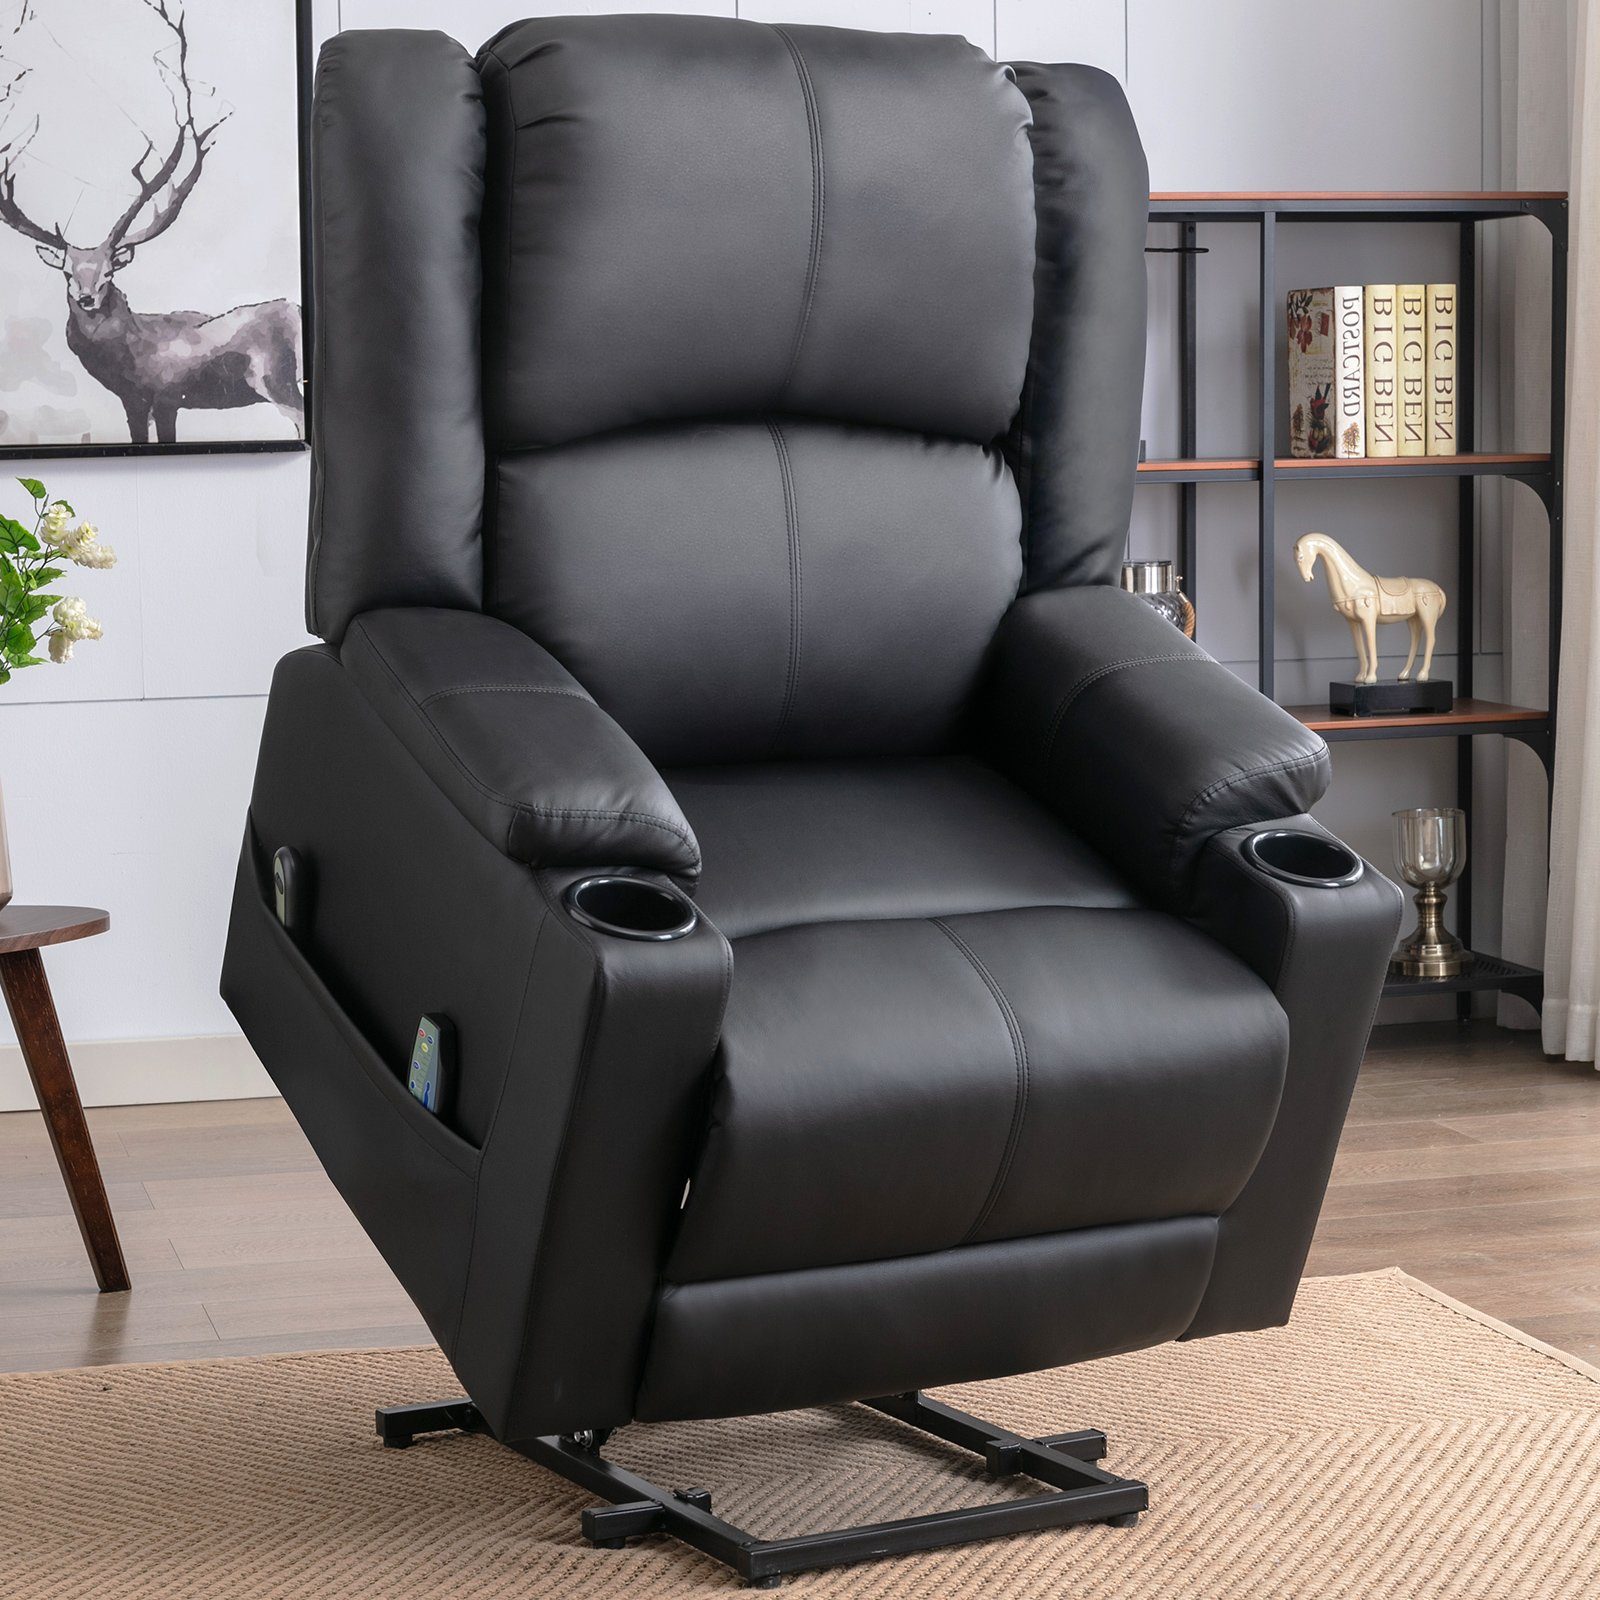 COMHOMA Relaxsessel Powerlift-Liegestuhl Massagesessel für ältere Menschen, mit 2 Seitentaschen und Getränkehalter, Massage & Heizung-Funktion schwarz